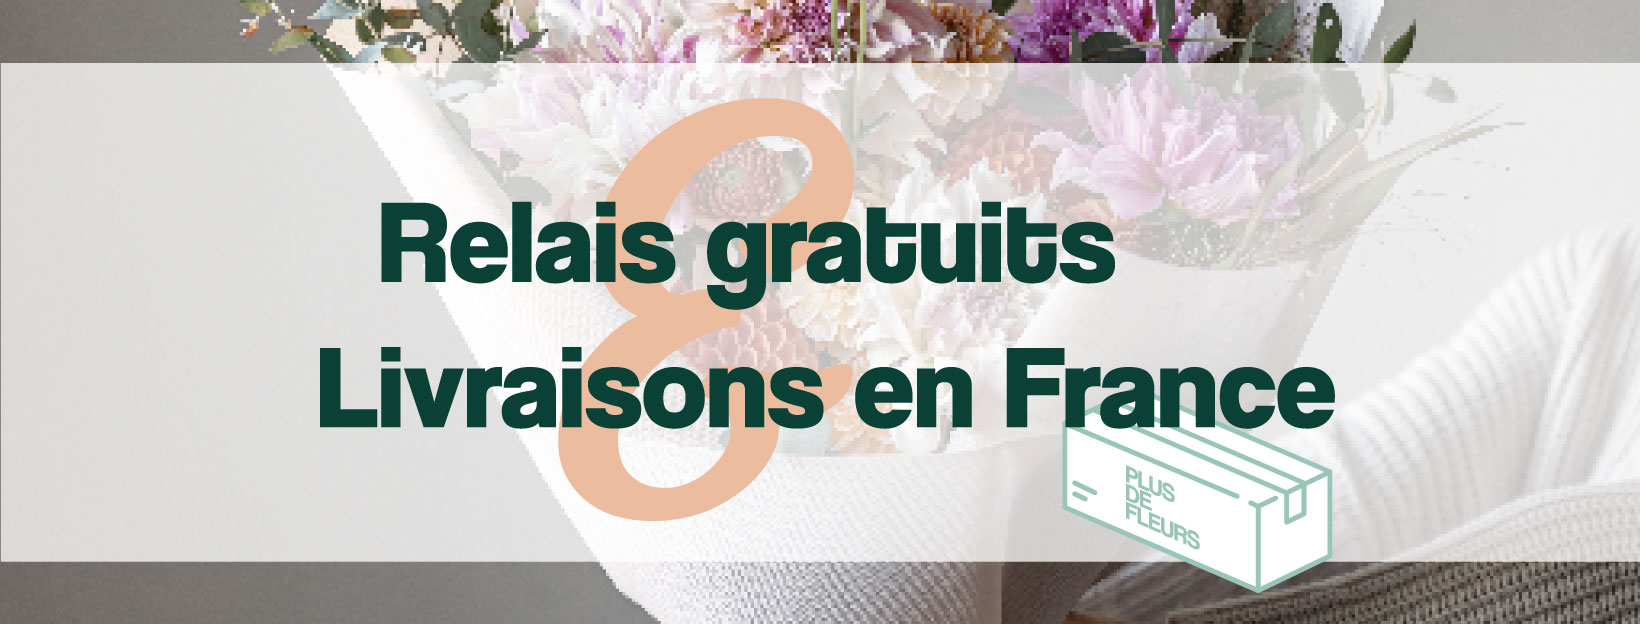 livraison de bouquet gratuite en point relais et à domicile en France